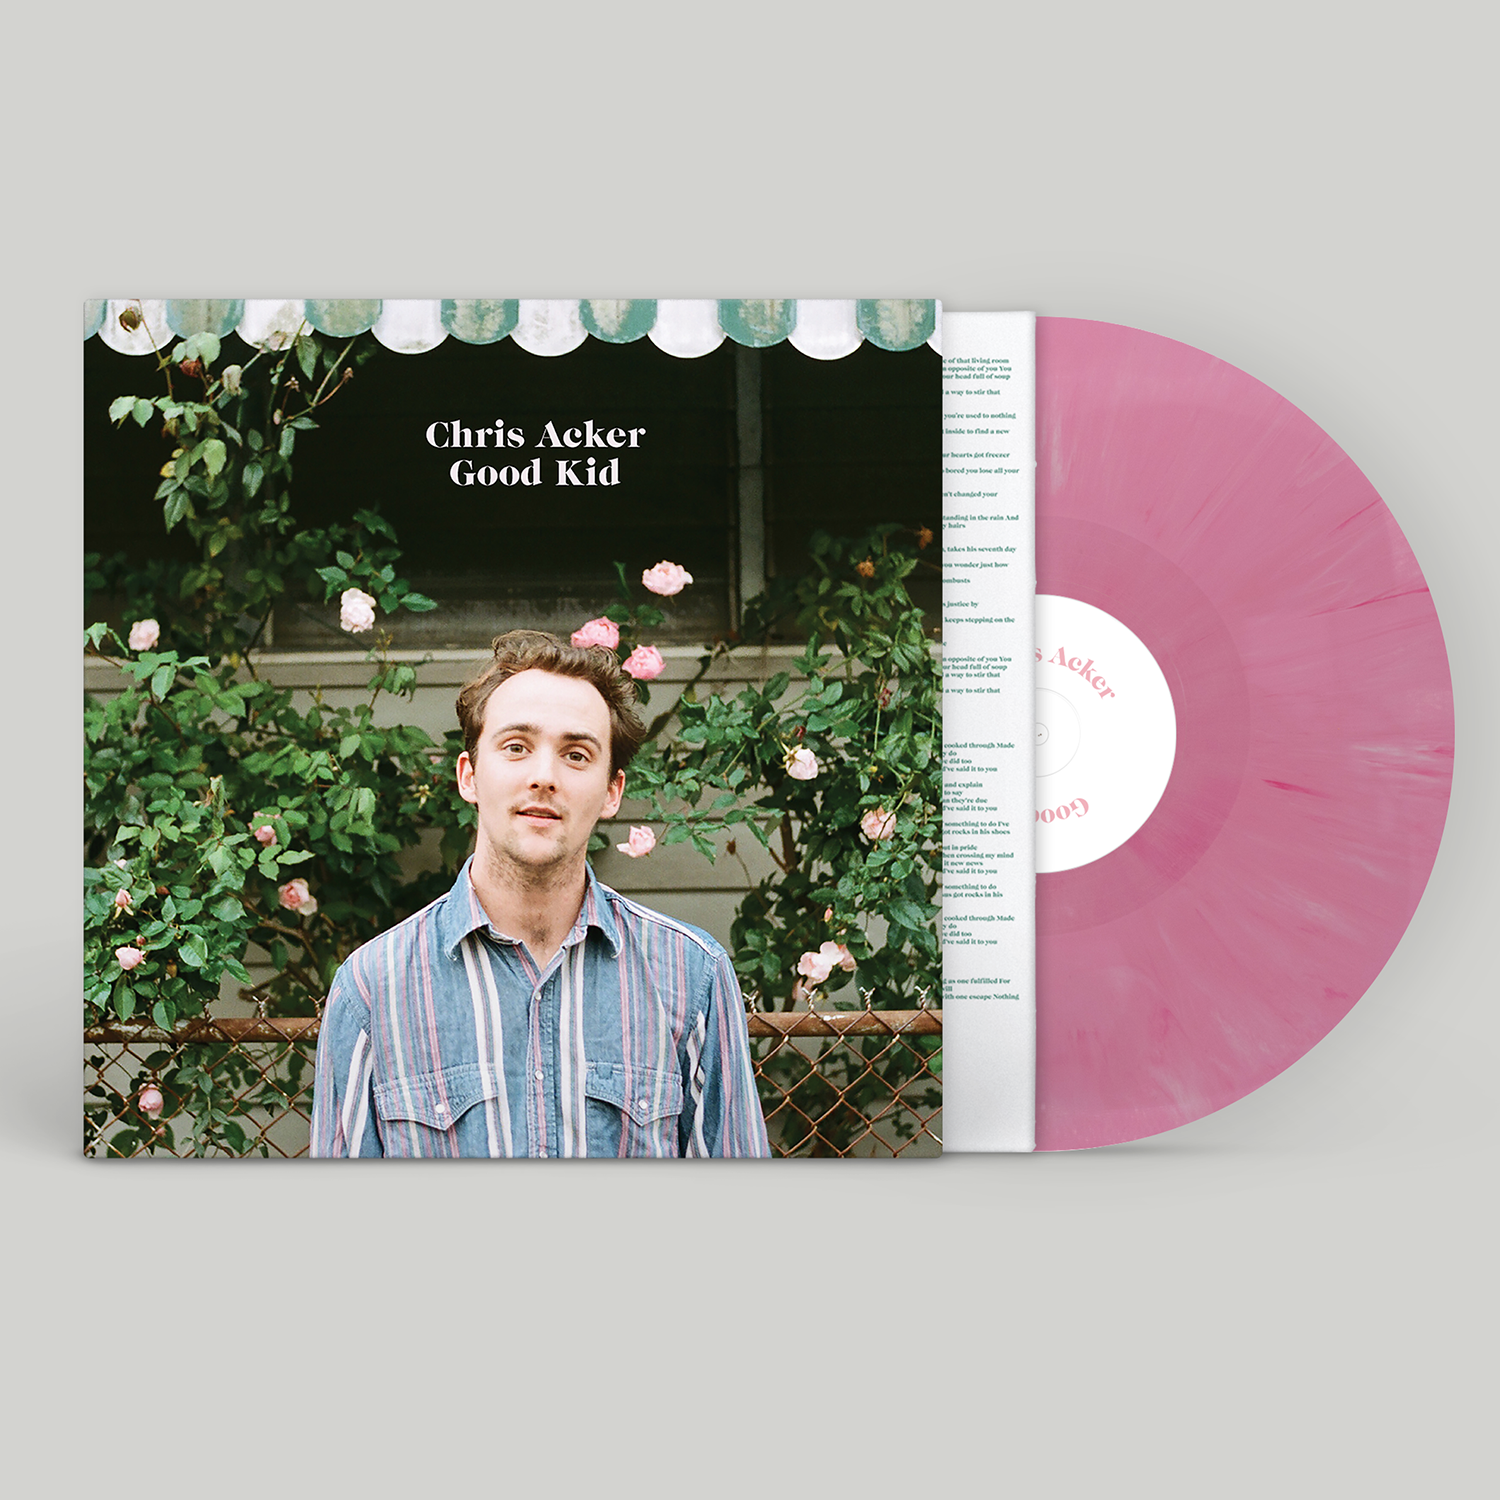 Chris Acker - "Good Kid" 140g Pink LP